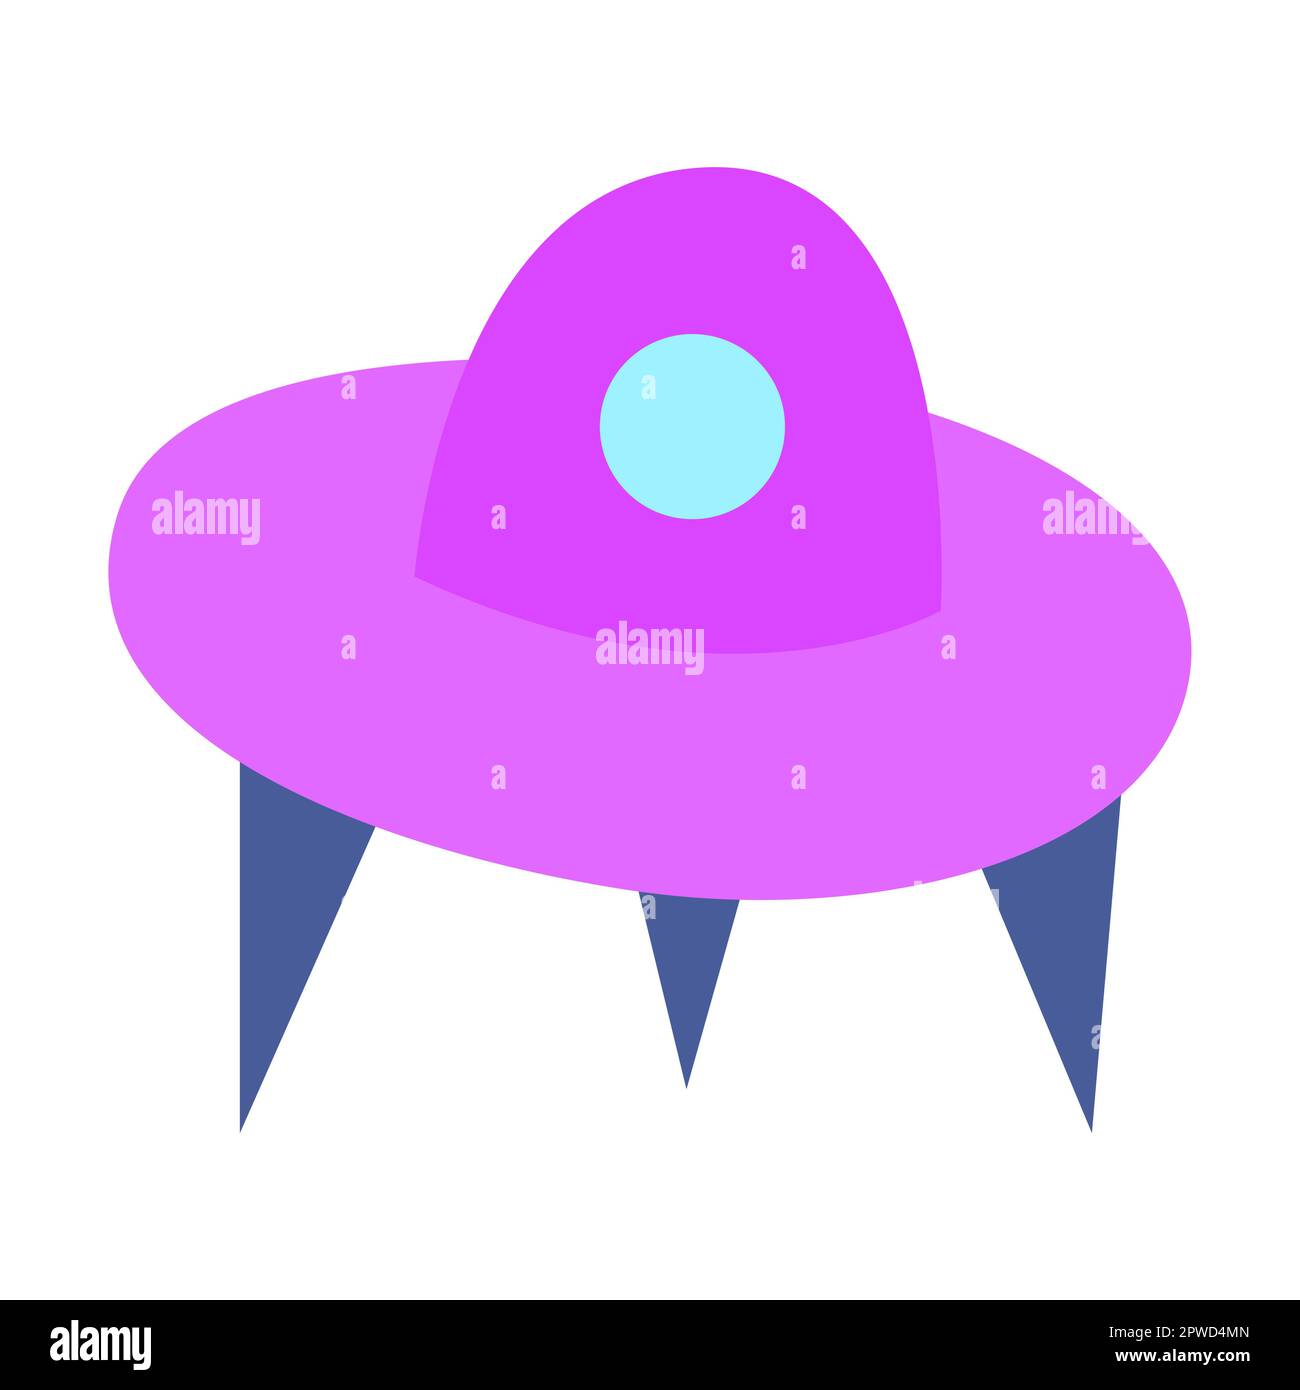 Fliegende Untertasse, Alienschiff aus einer fernen Galaxie. Flache Cartoon-Darstellung isoliert auf weißem Hintergrund Stock Vektor